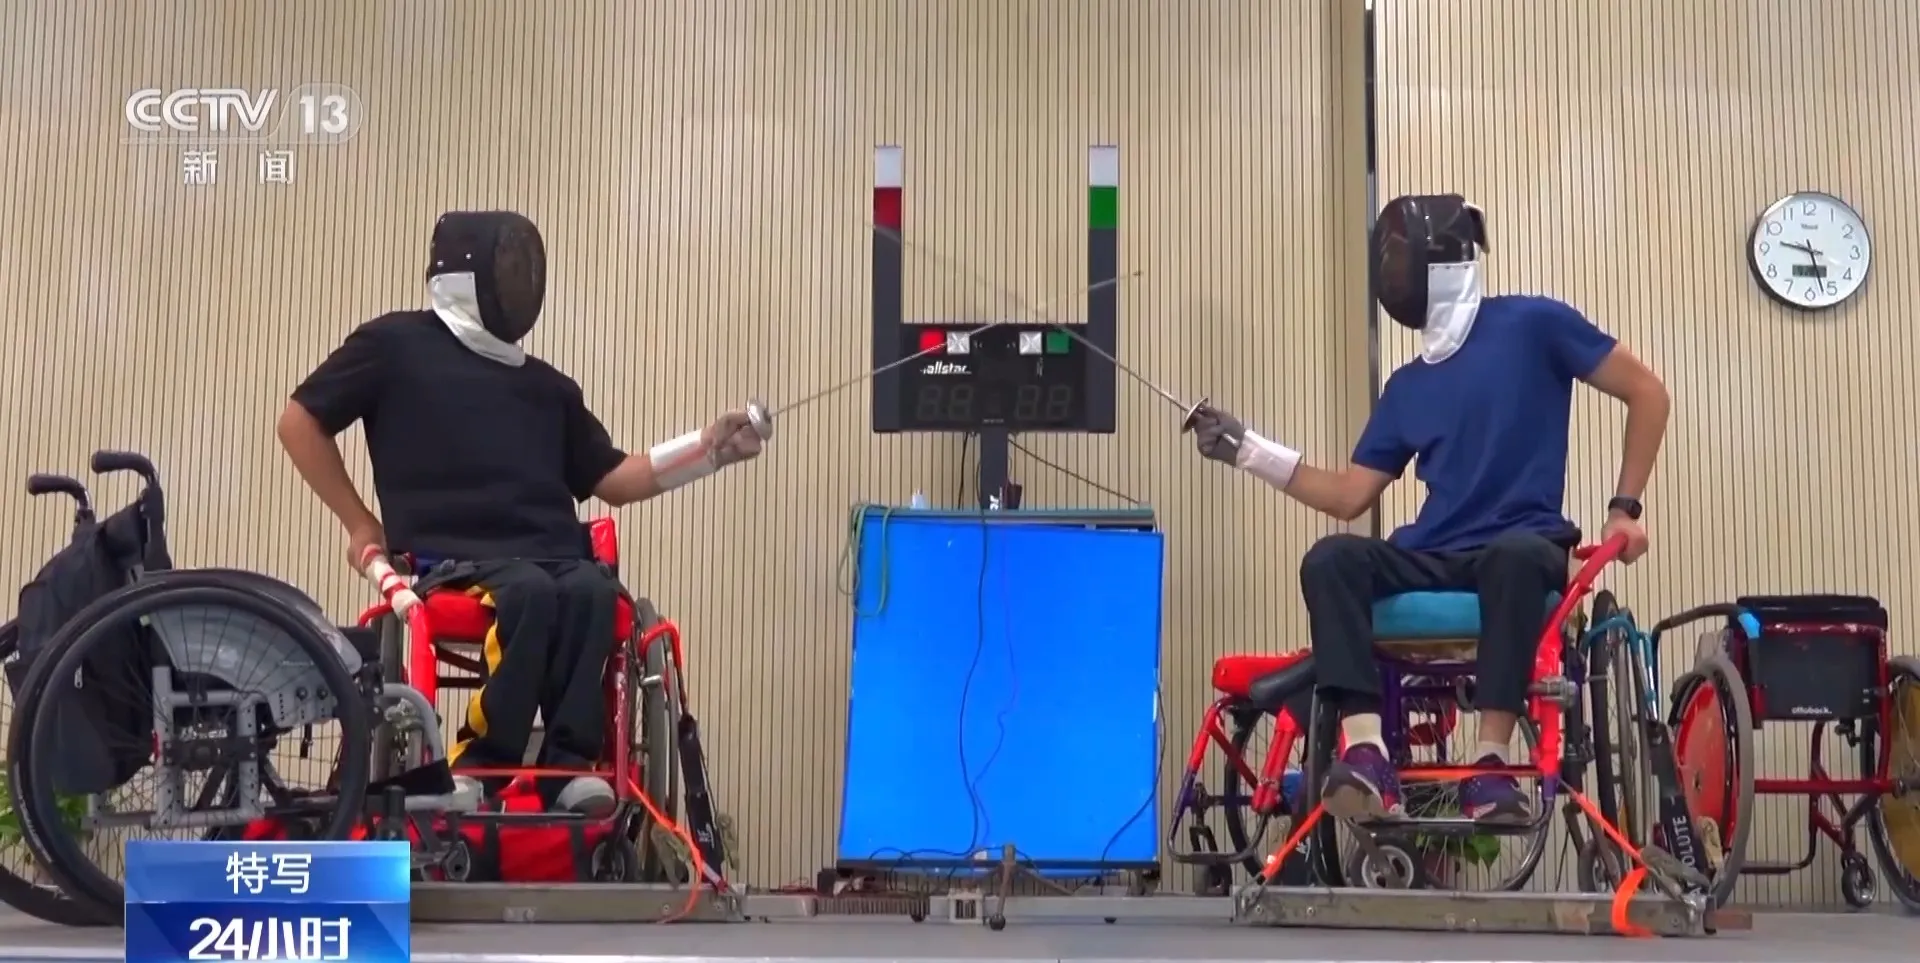 备战冲刺亚残运会 一月两次“大考” 轮椅剑客努力为国争光